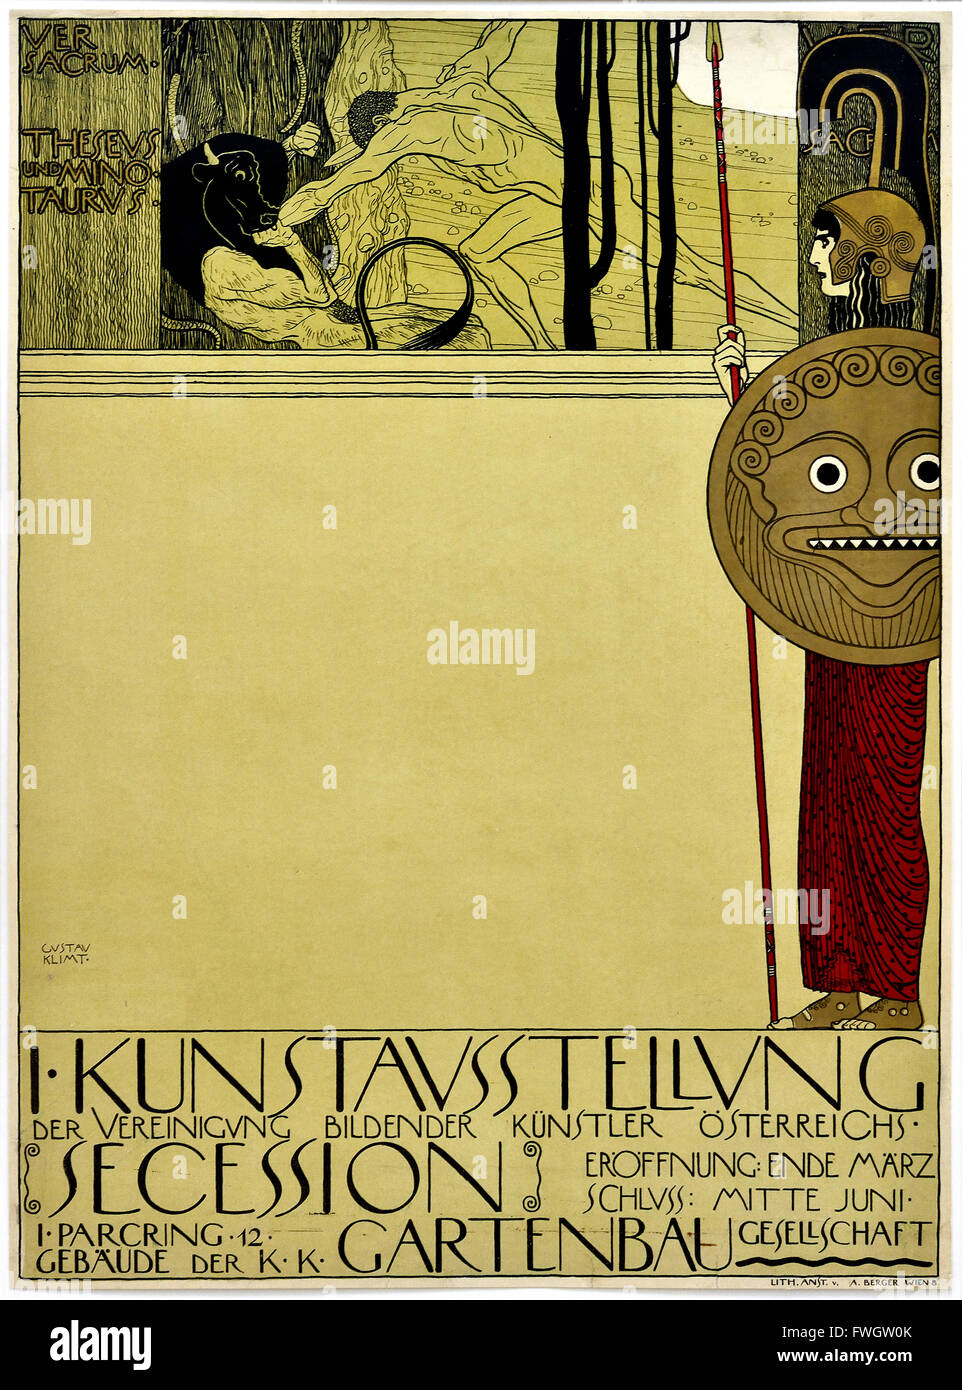 Affiche pour la première exposition de la Sécession viennoise ( censuré )1898 Gustav Klimt 1862 - 1918 peintre symboliste autrichien du mouvement de sécession de Vienne Autriche Banque D'Images